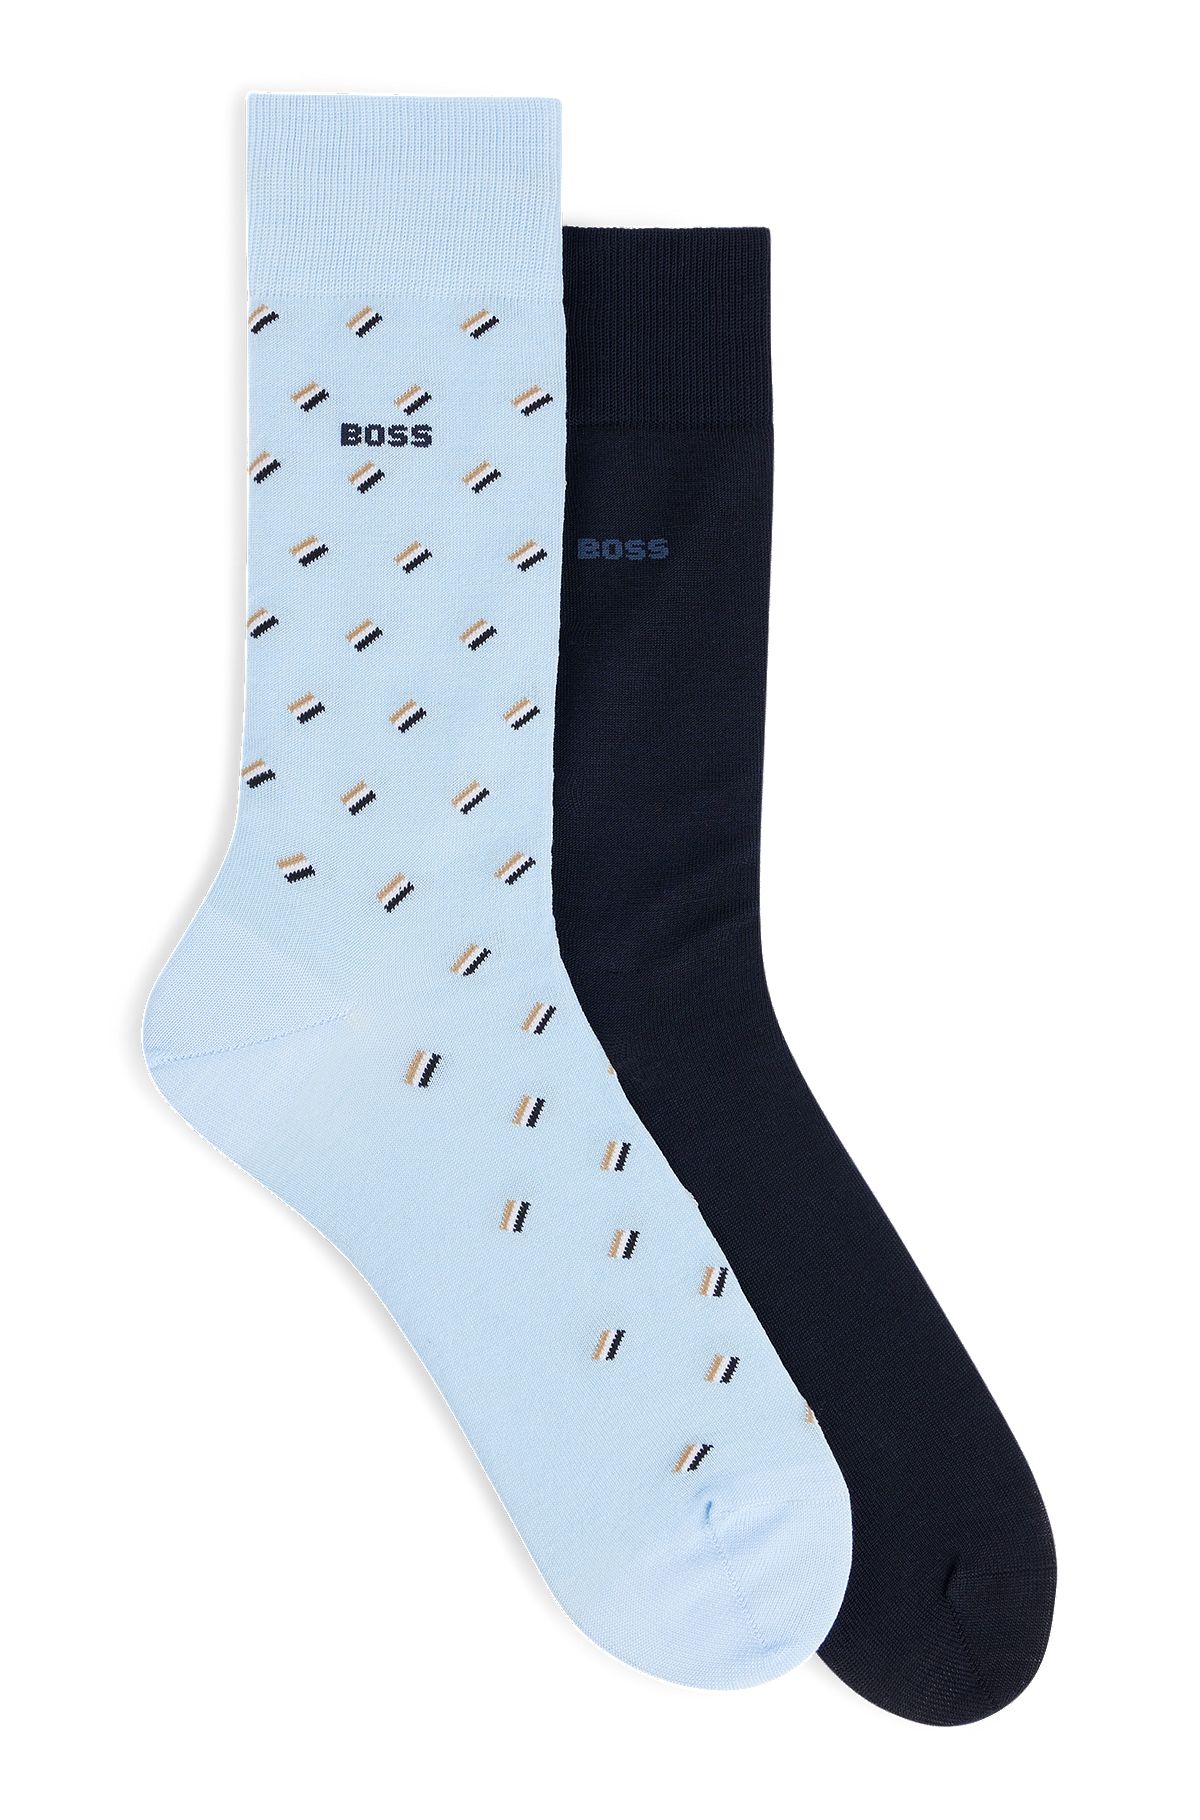 Deux paires de chaussettes mi-mollet en coton mélangé mercerisé, bleu clair